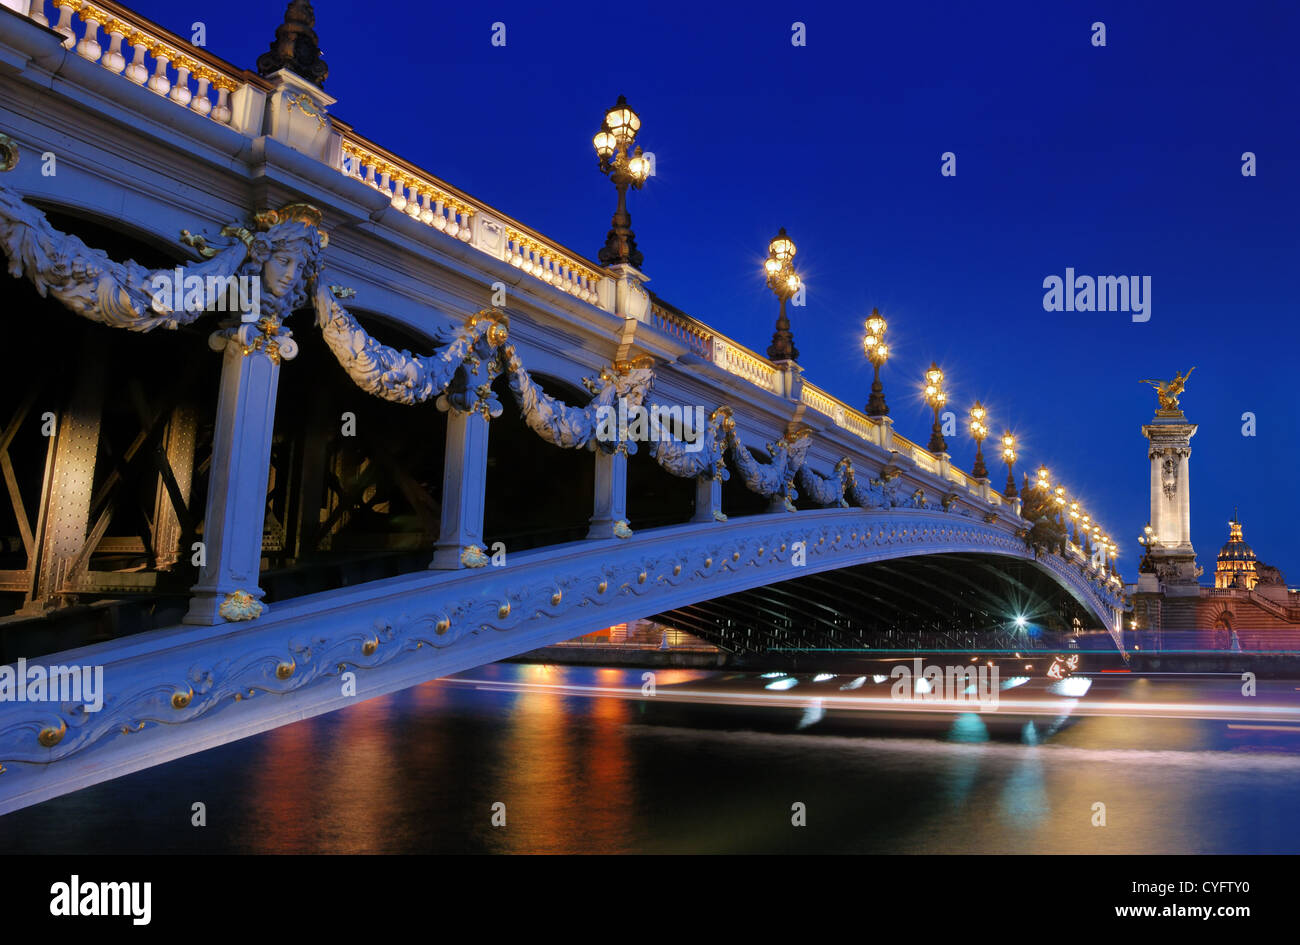 The bridge Pont Alexandre III connect the Champs-Élysées quarter and the Invalides quarter in Paris, France. Stock Photo